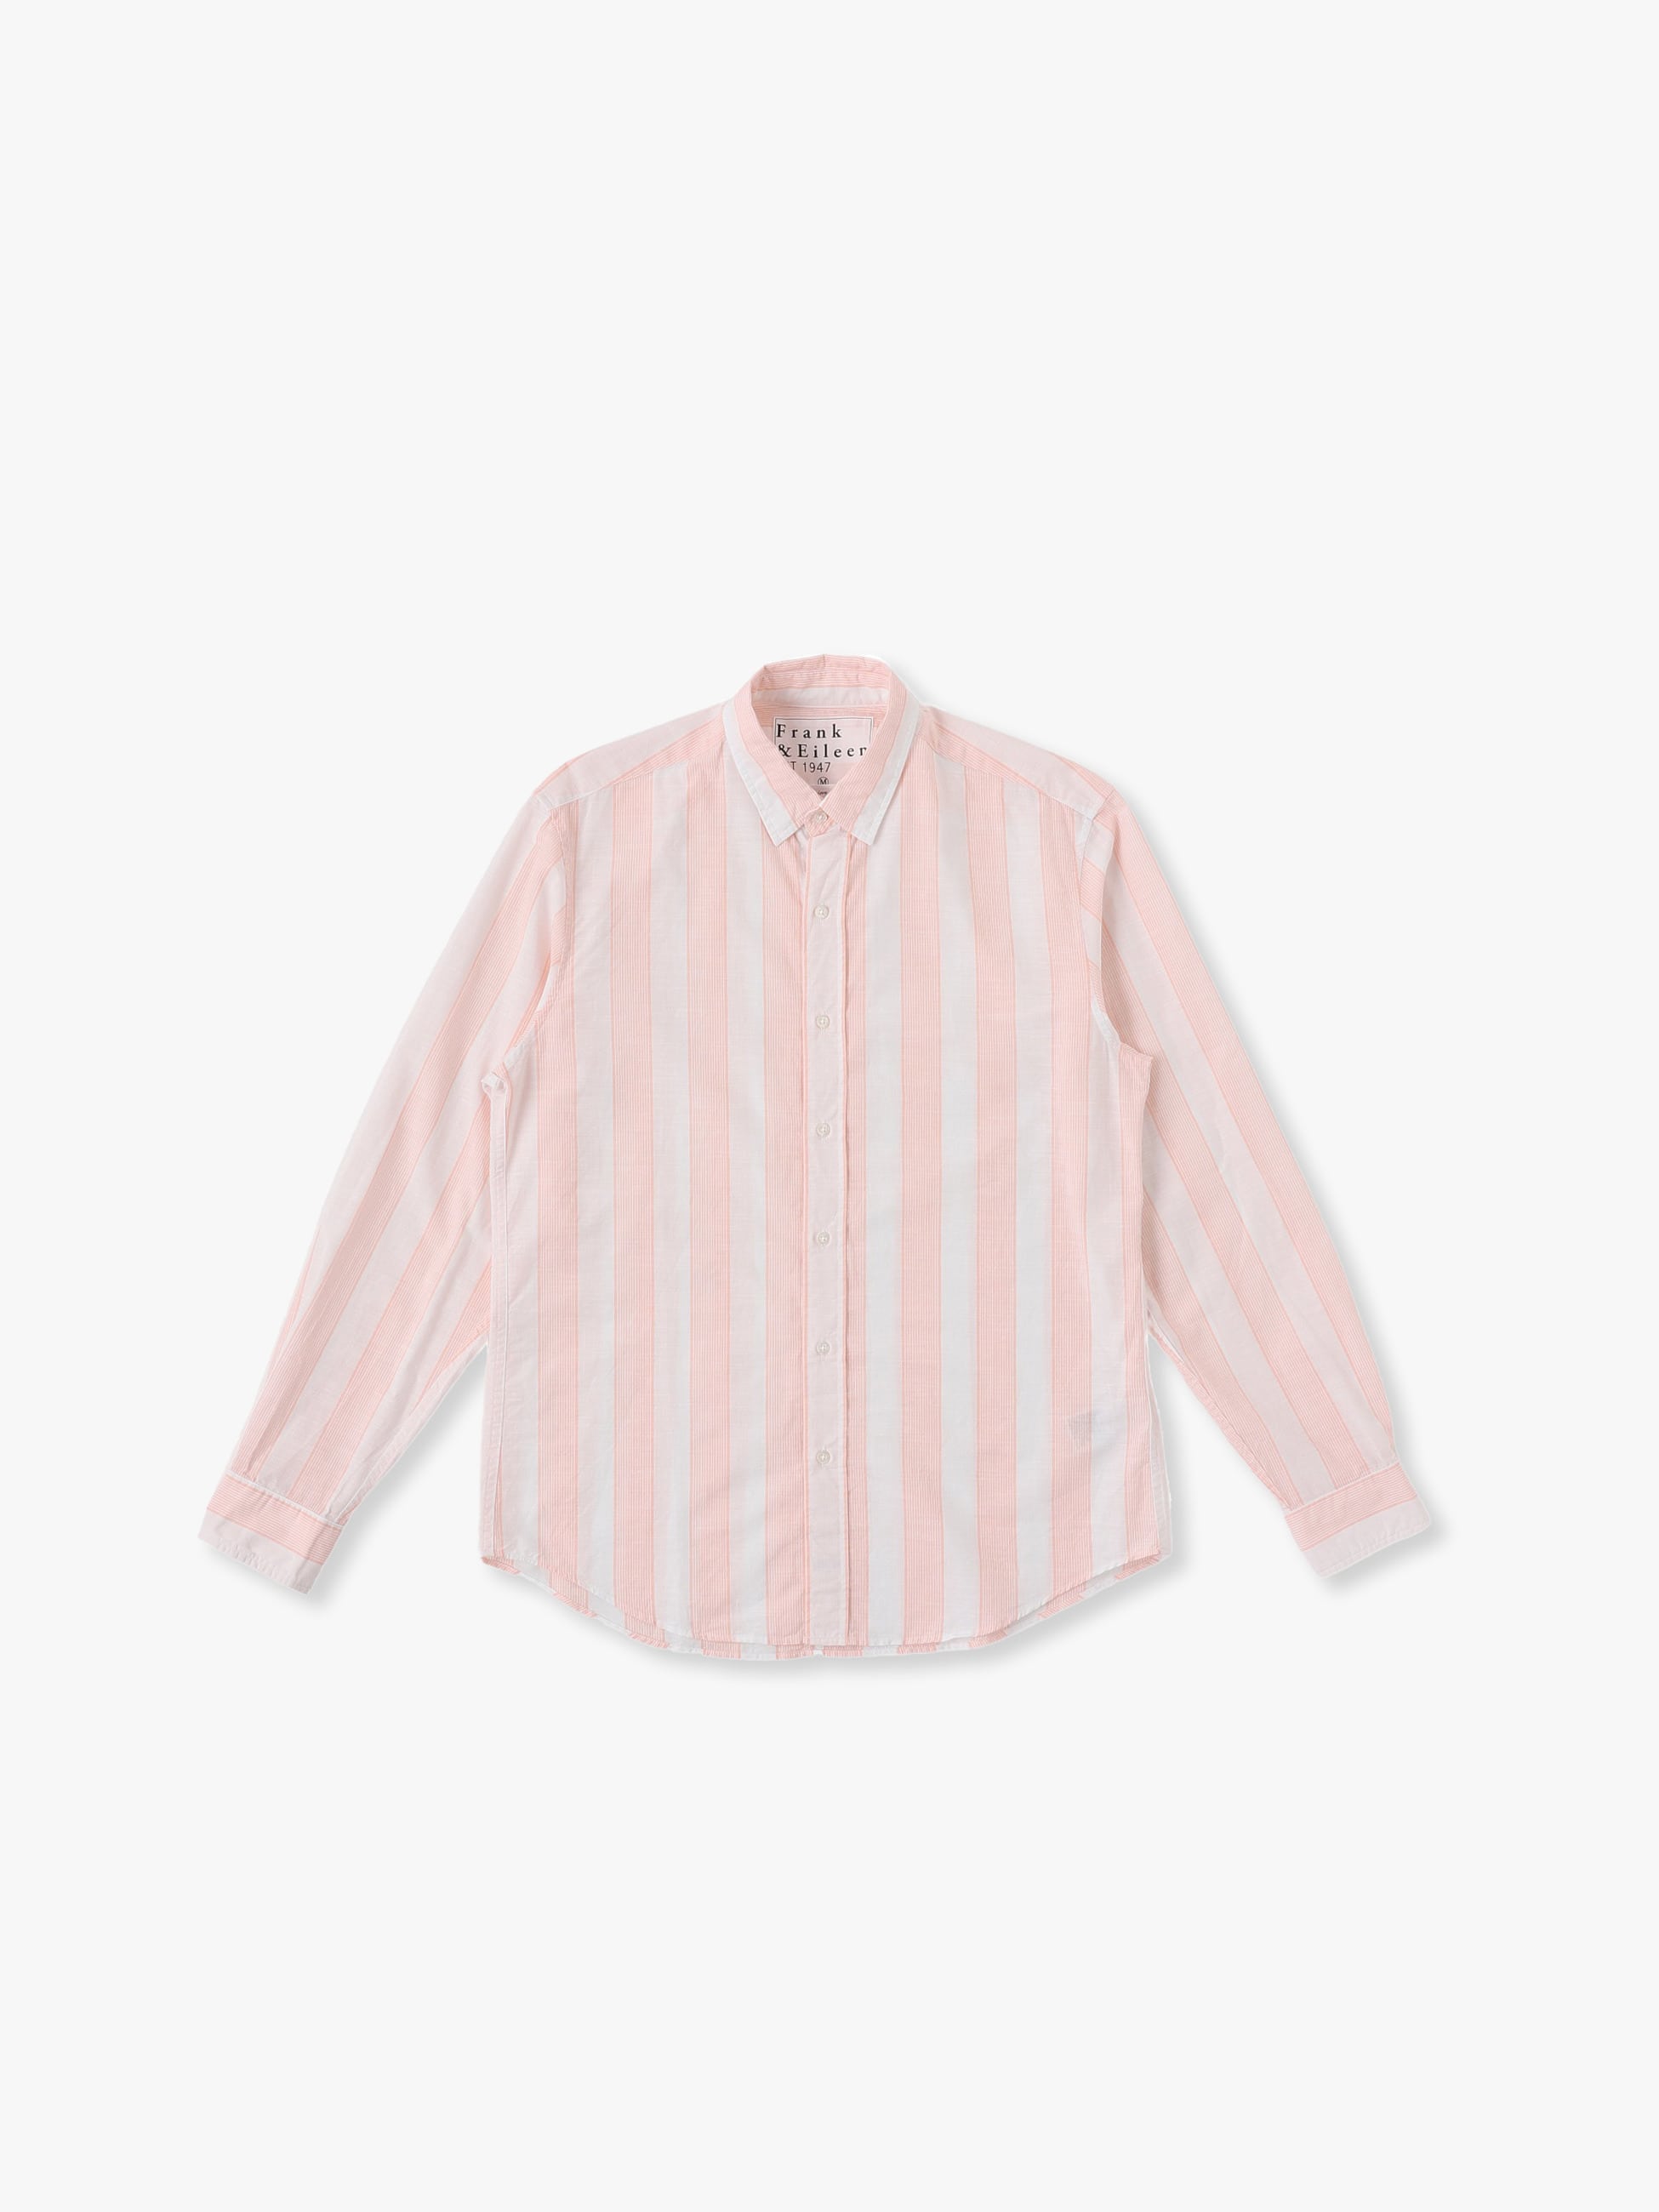 Finbar TWCB Shirt 詳細画像 light pink 1